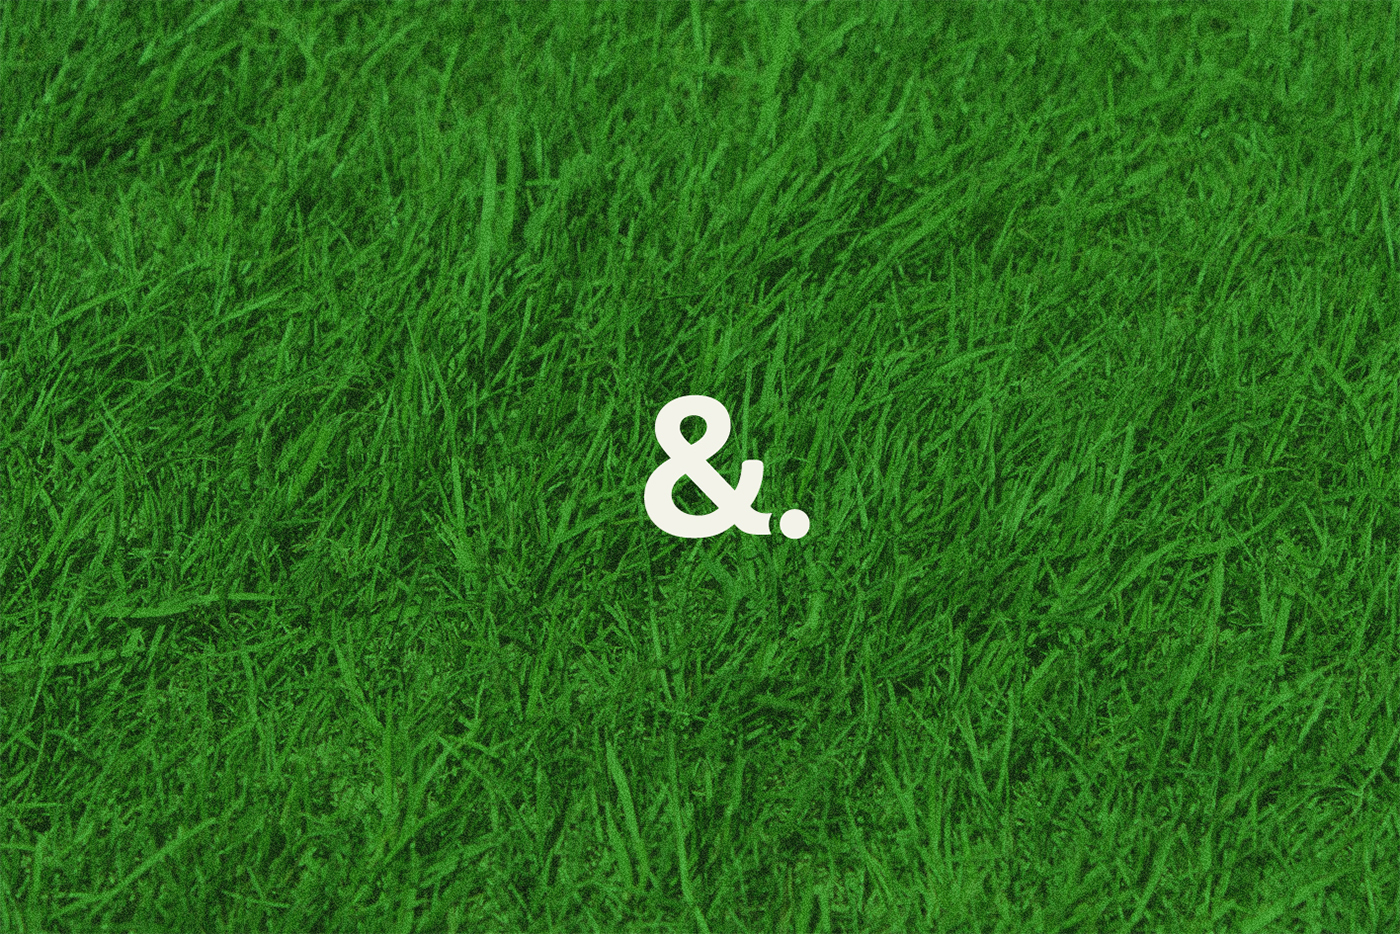 golf pitch and putt green ball grass sport verin brand map poster vector flat